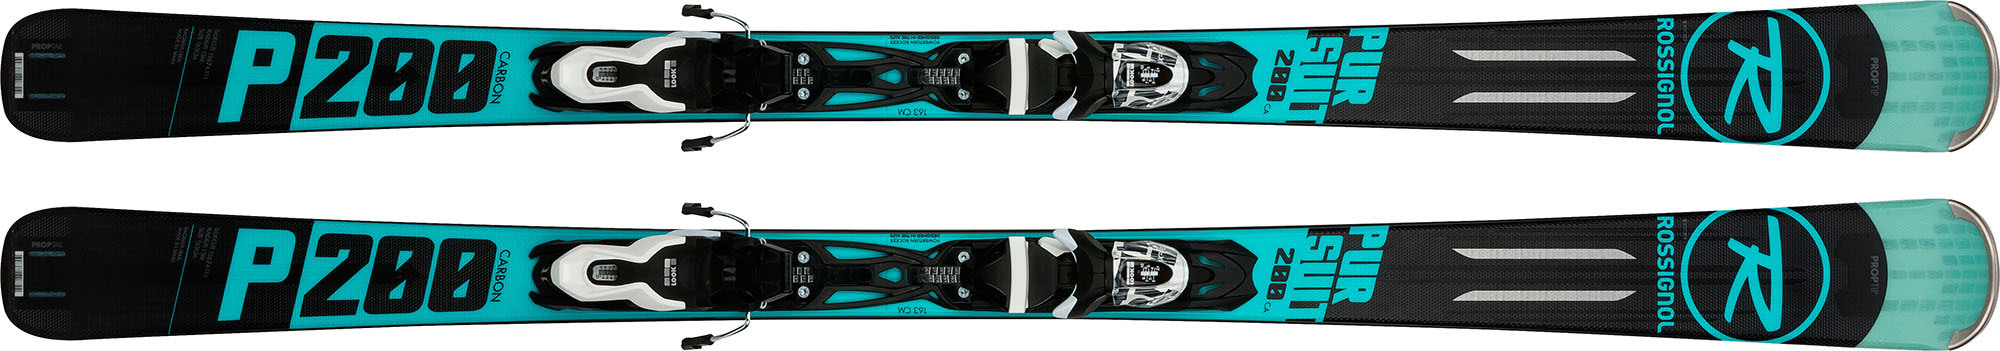 rossignol pursuit 200 carbon skis